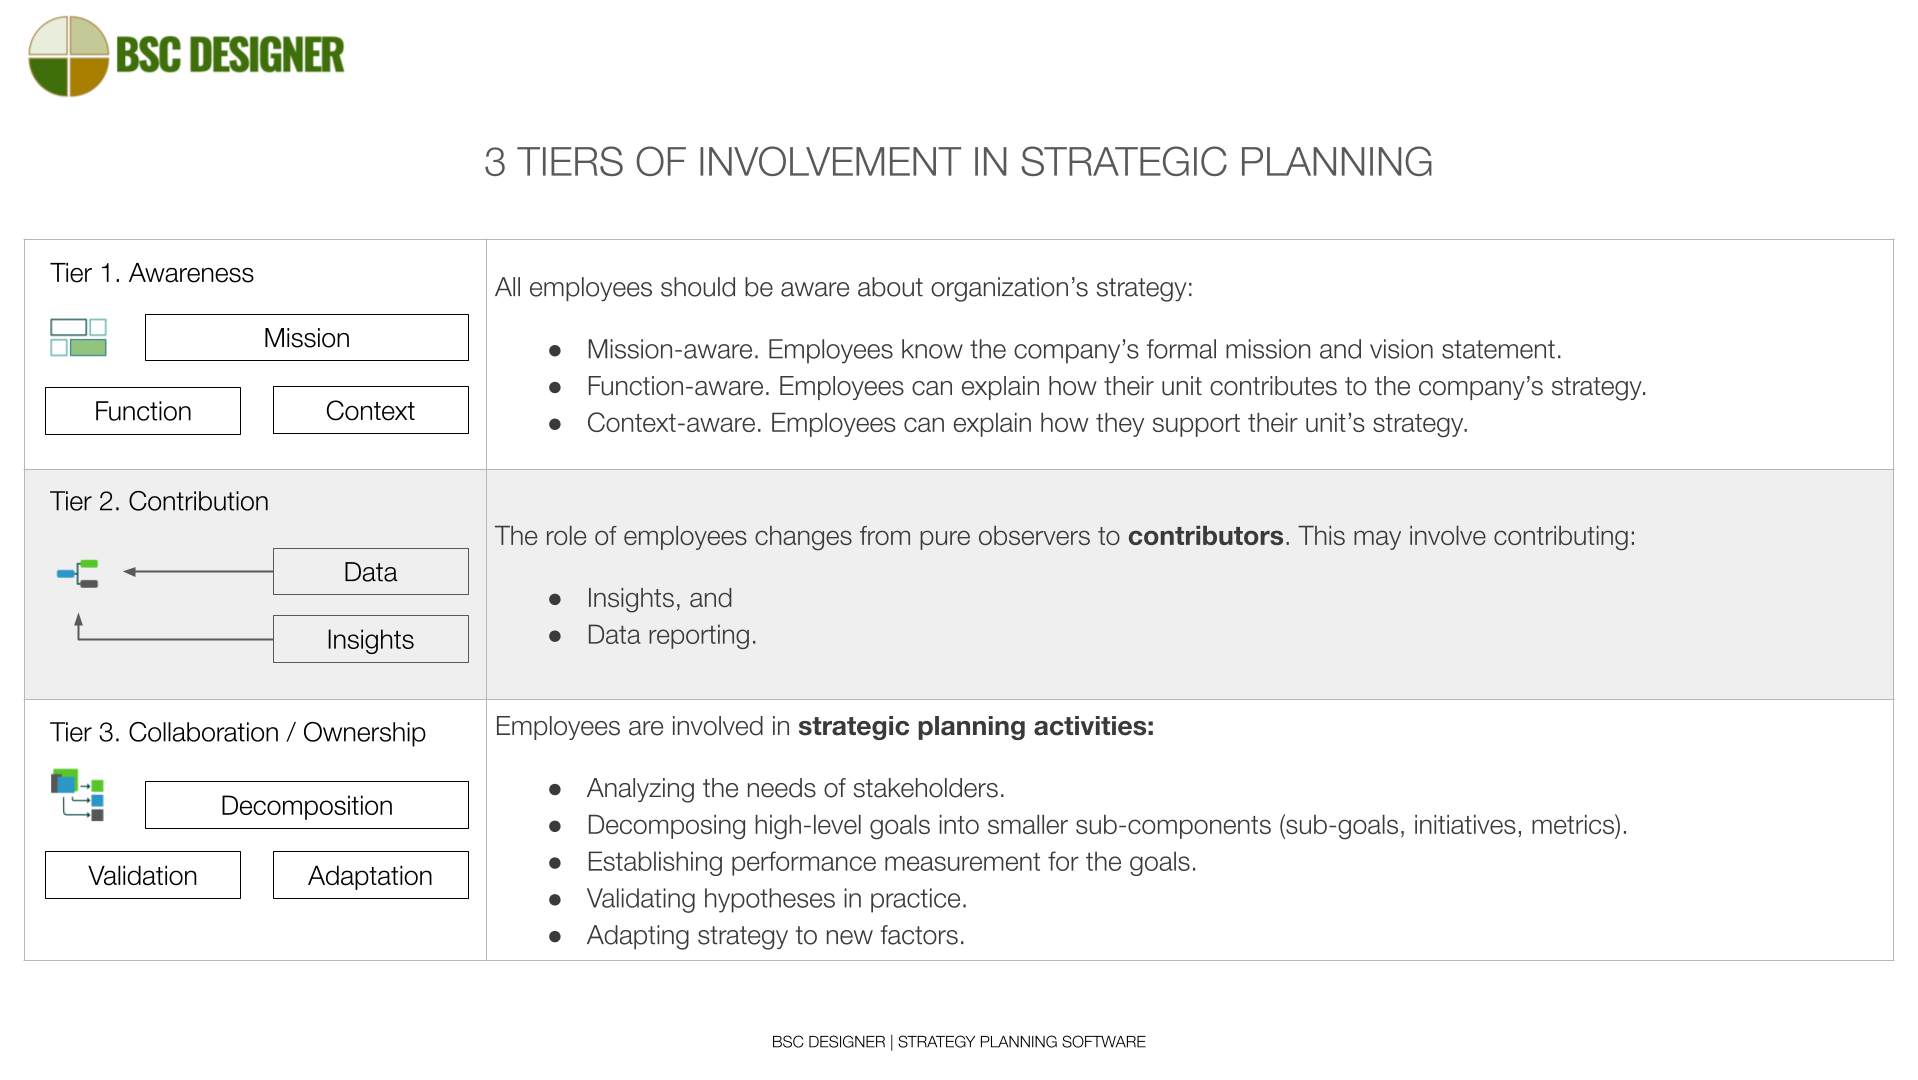 3 níveis de envolvimento dos funcionários no planejamento estratégico